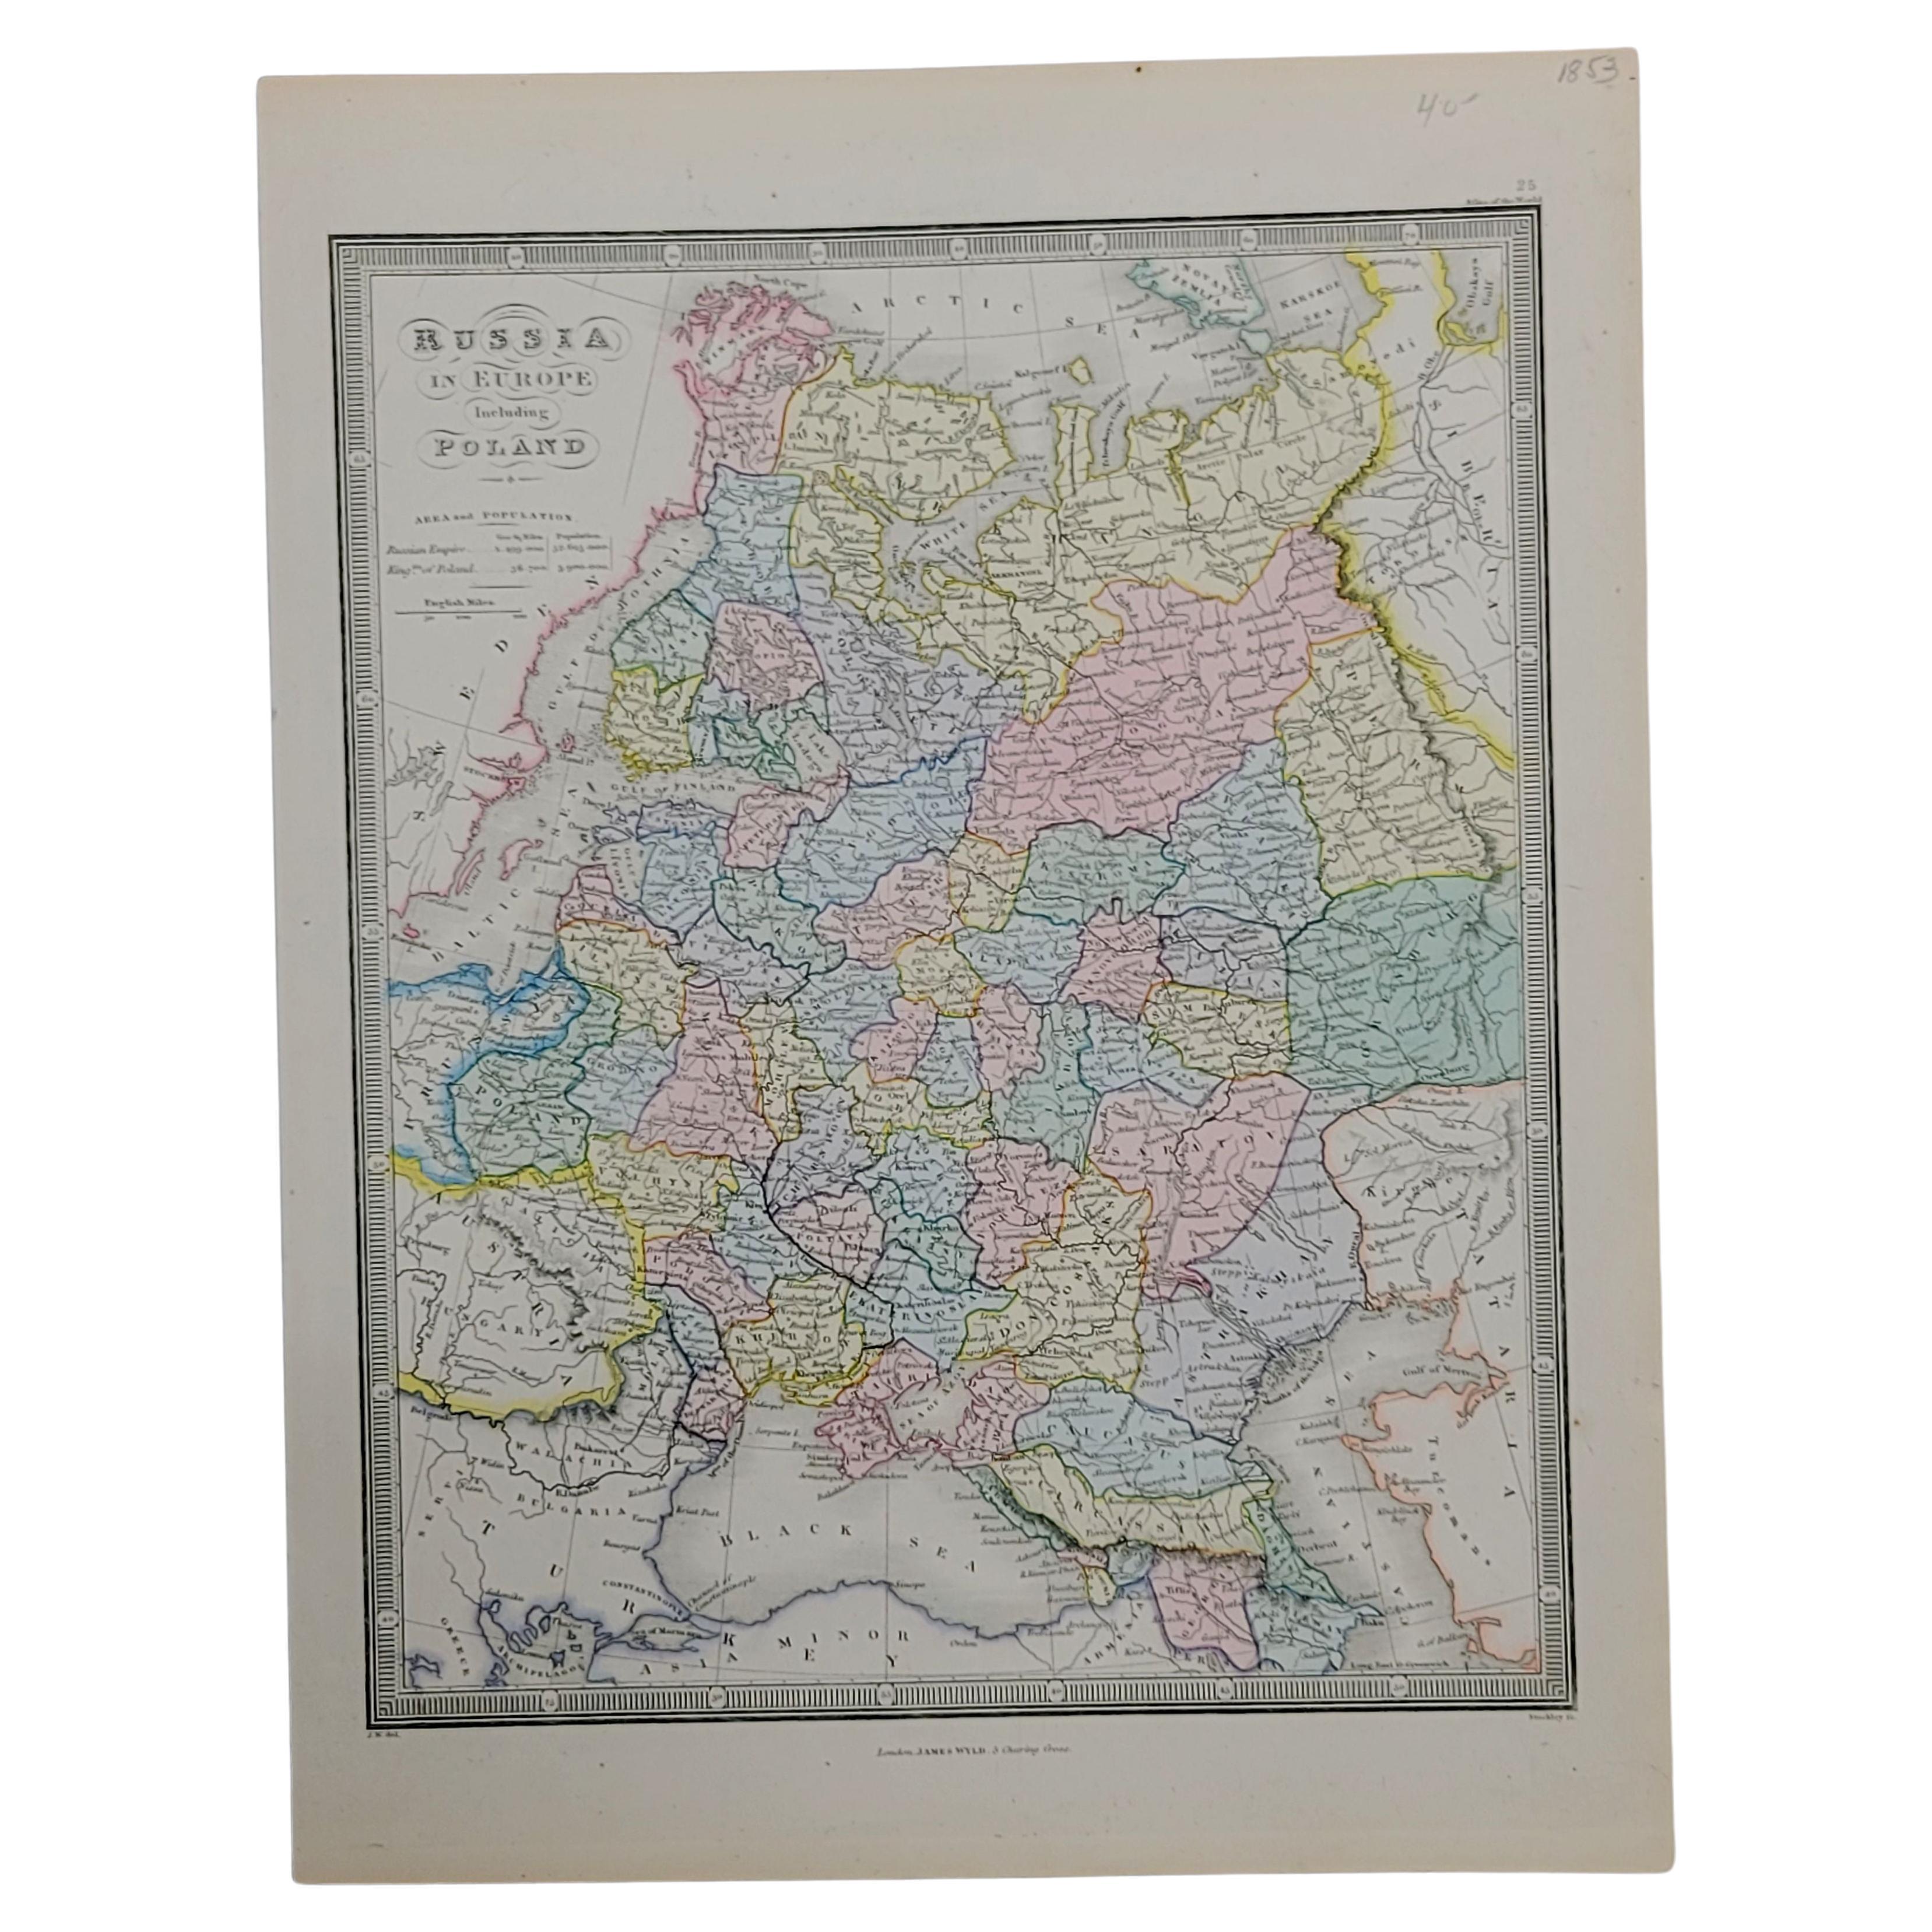 Carte de 1853 « Russie en Europe, y compris la Pologne » Ric.r016